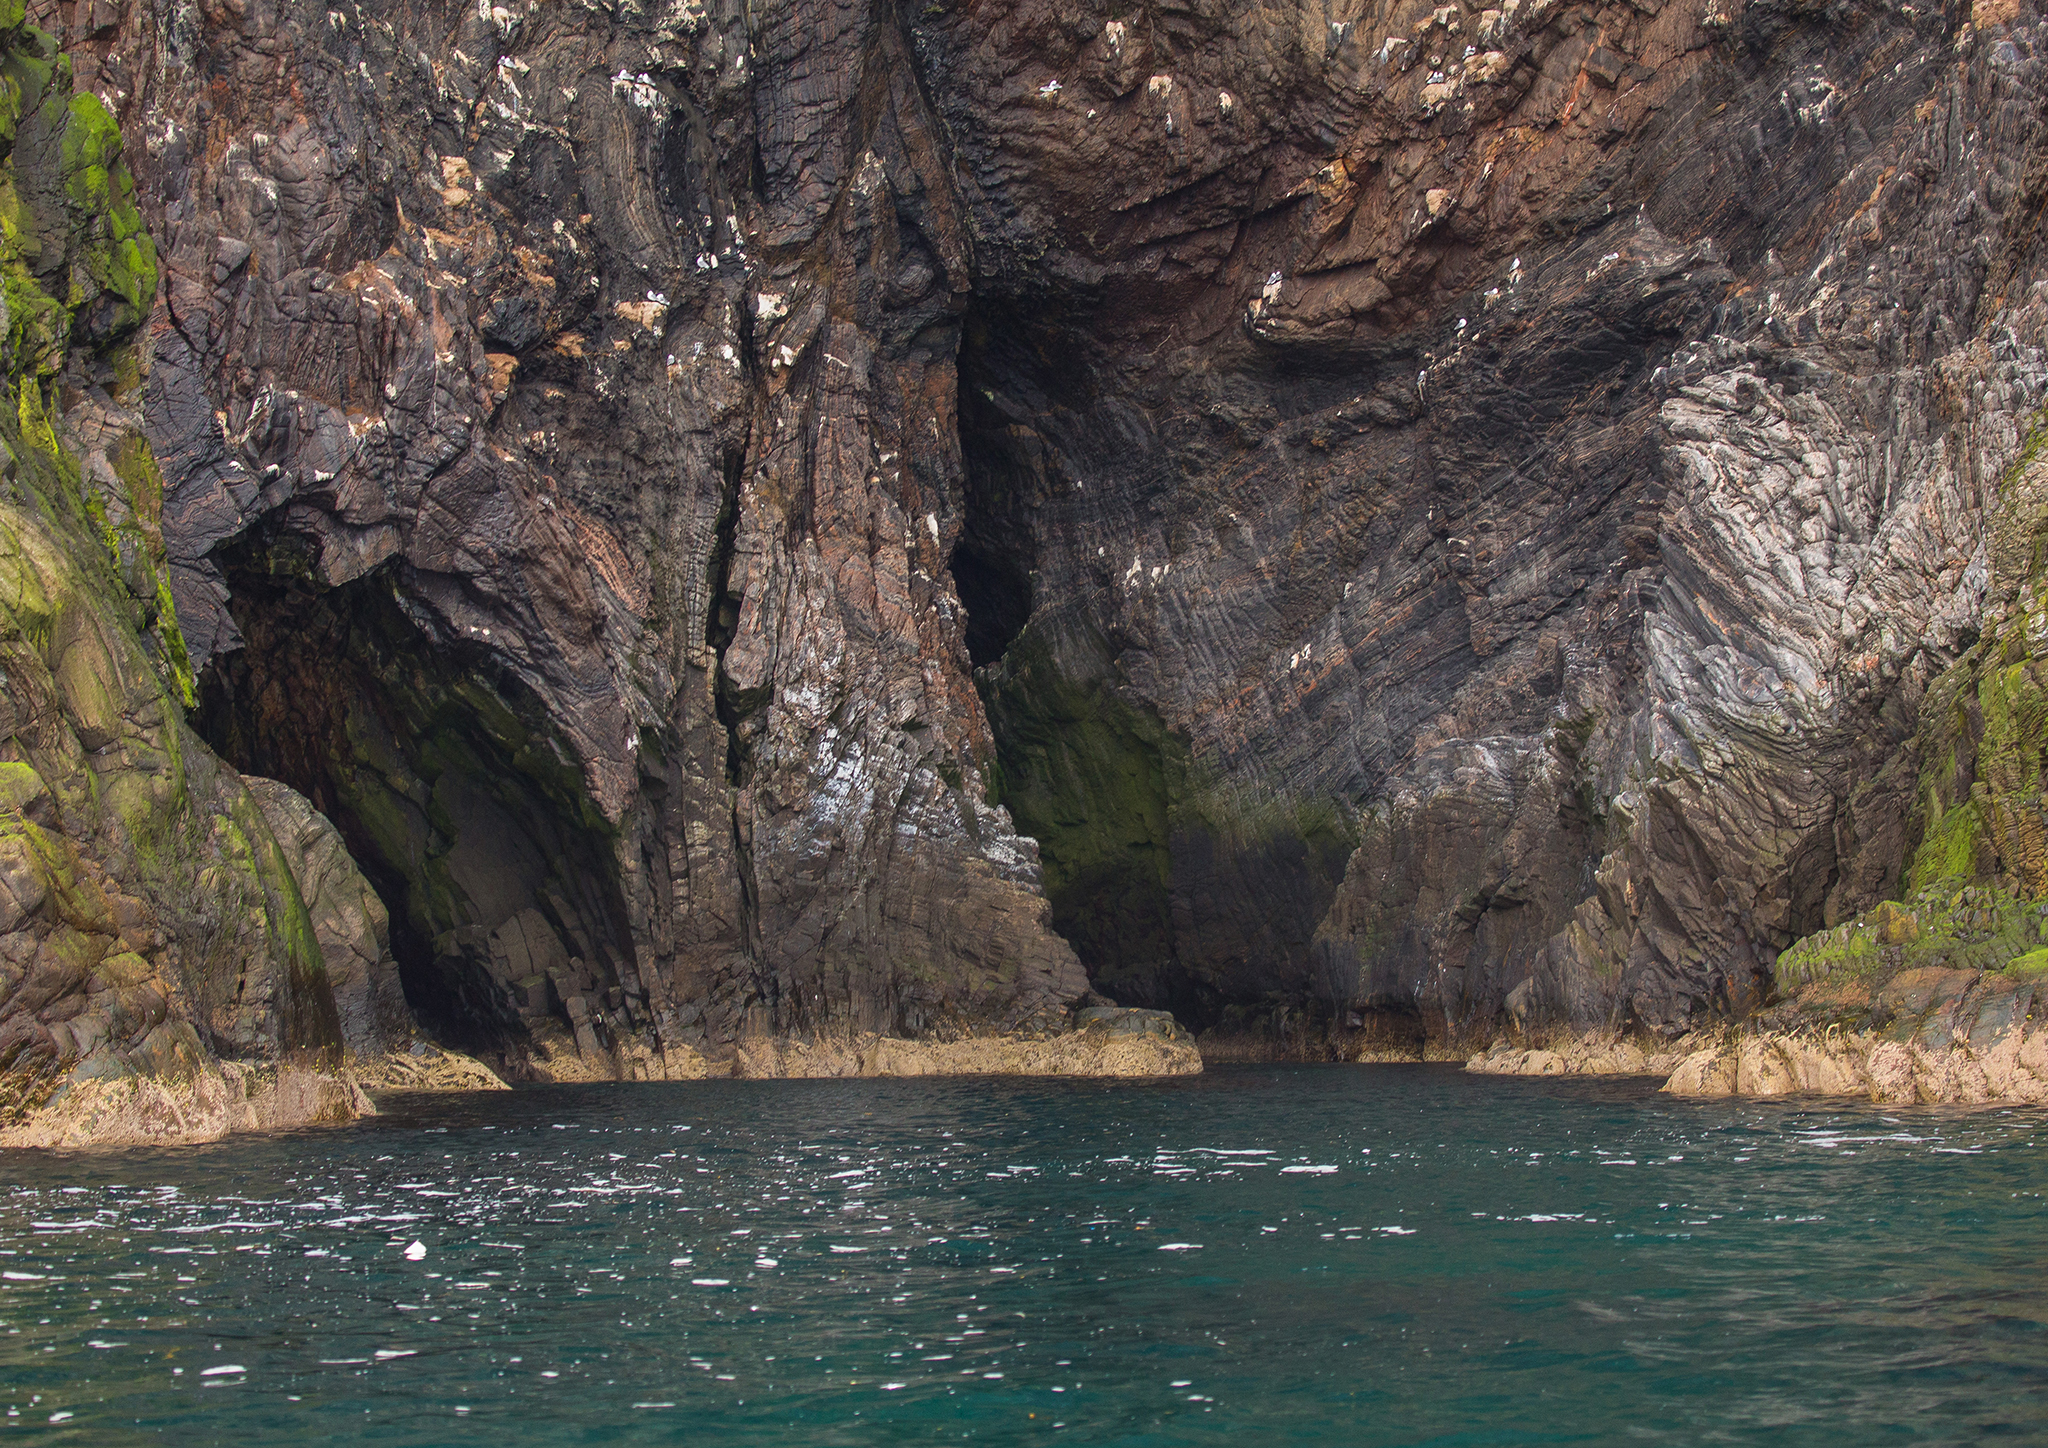    Under det 300 m høye fuglefjellet er det en 60 meters dyp grotte. Guiden i motorbåt kjører oss inn i disse hulene.   